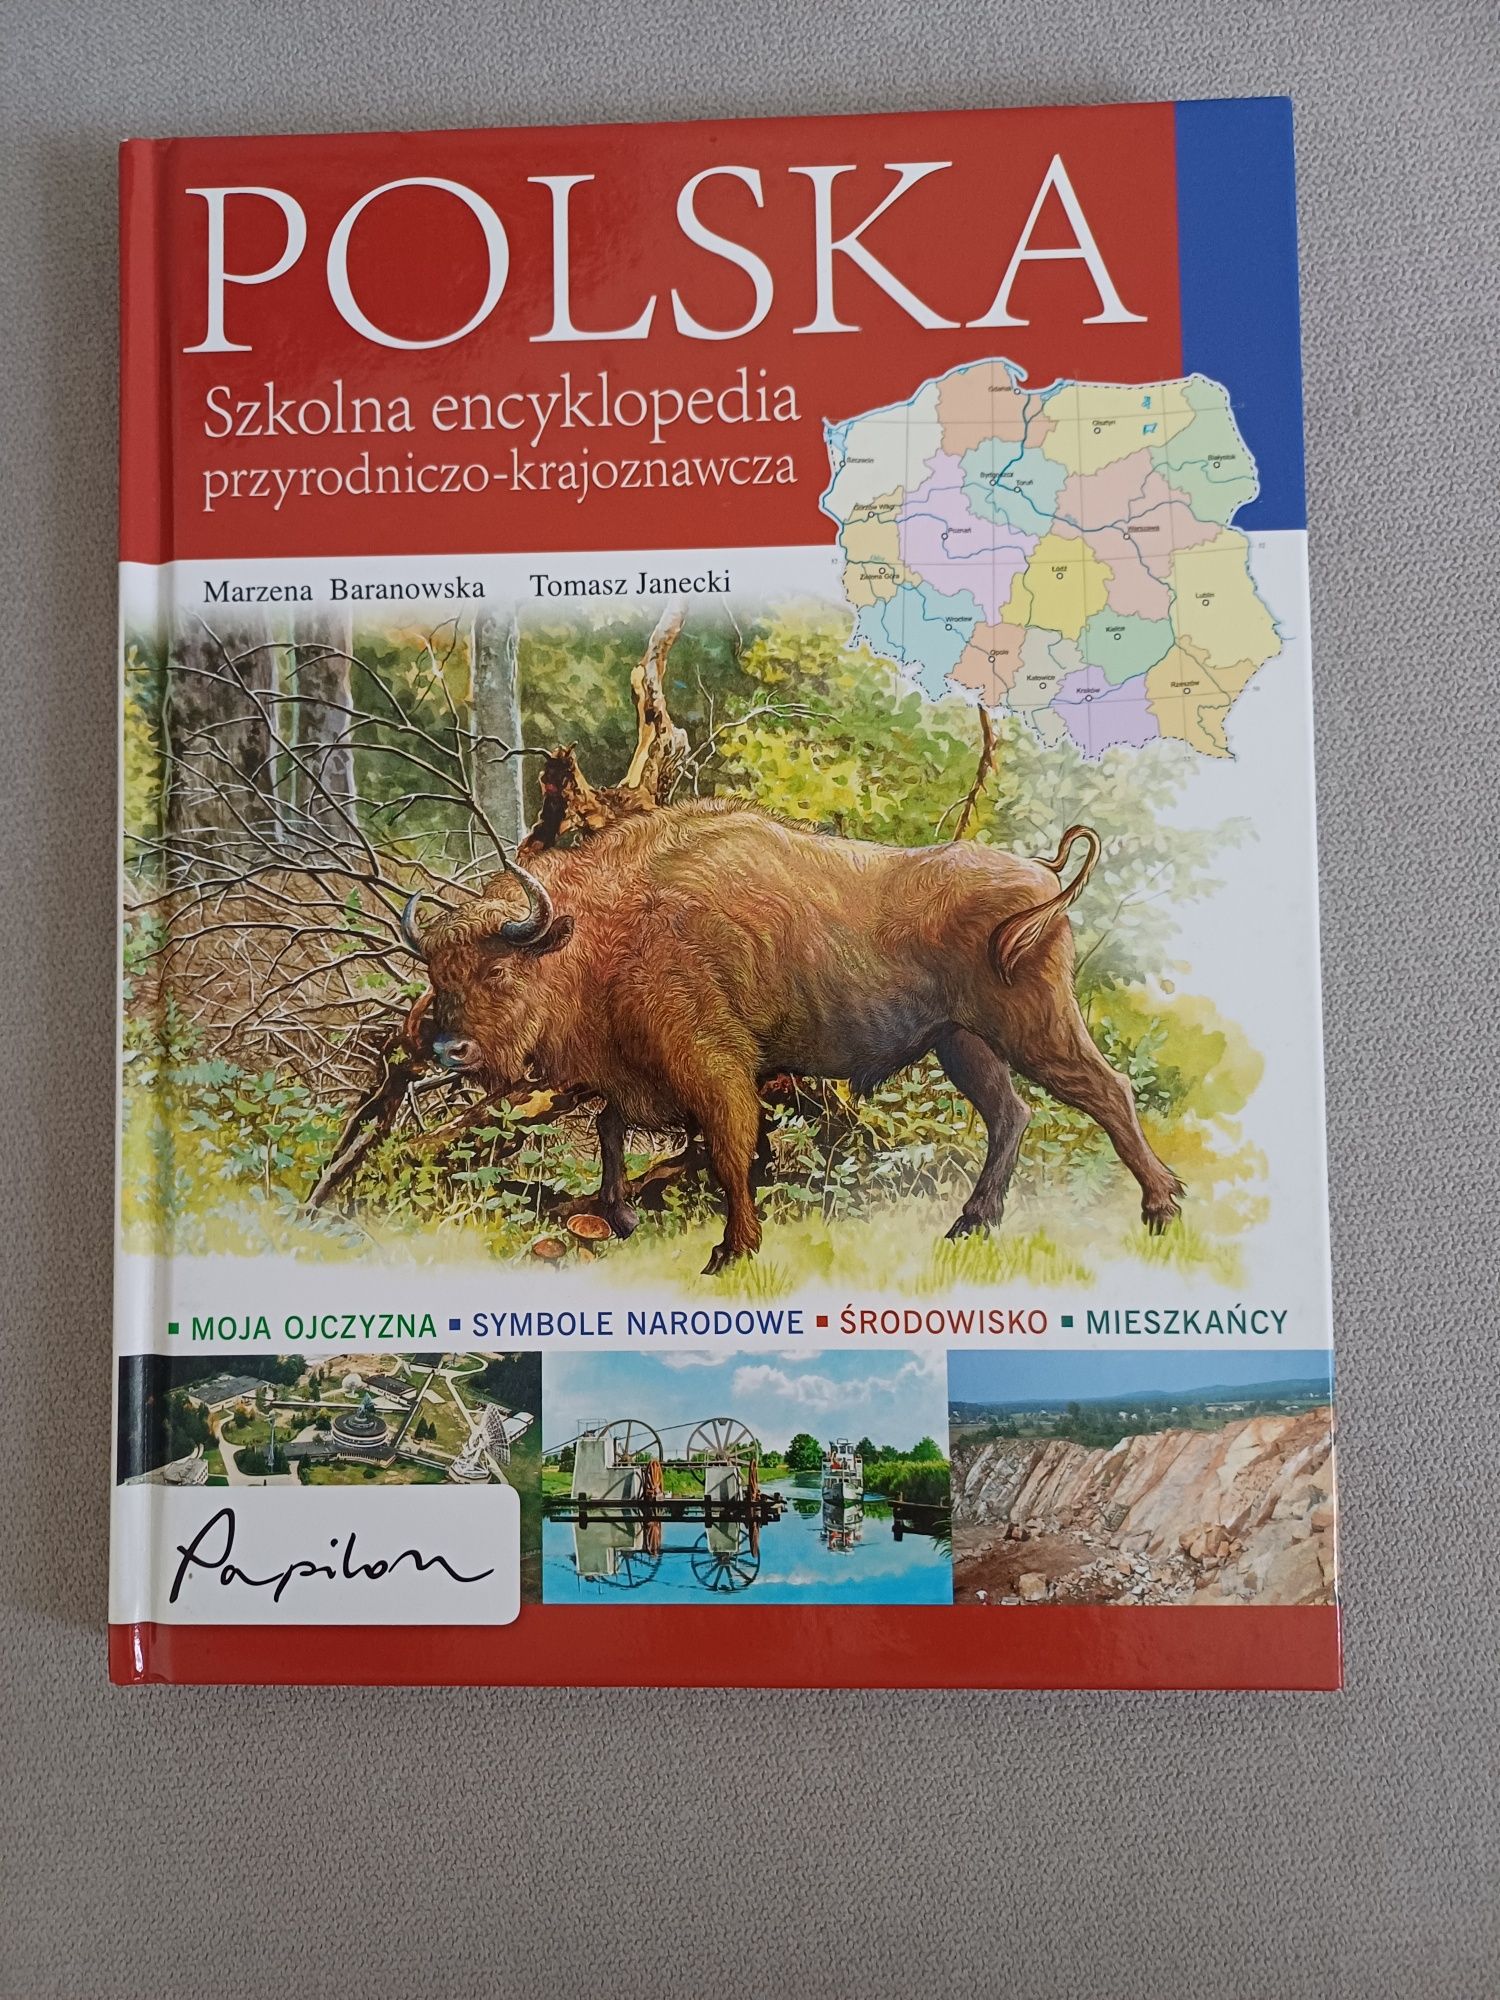 Polska Szkolna encyklopedia przyrodniczo-krajoznawcza